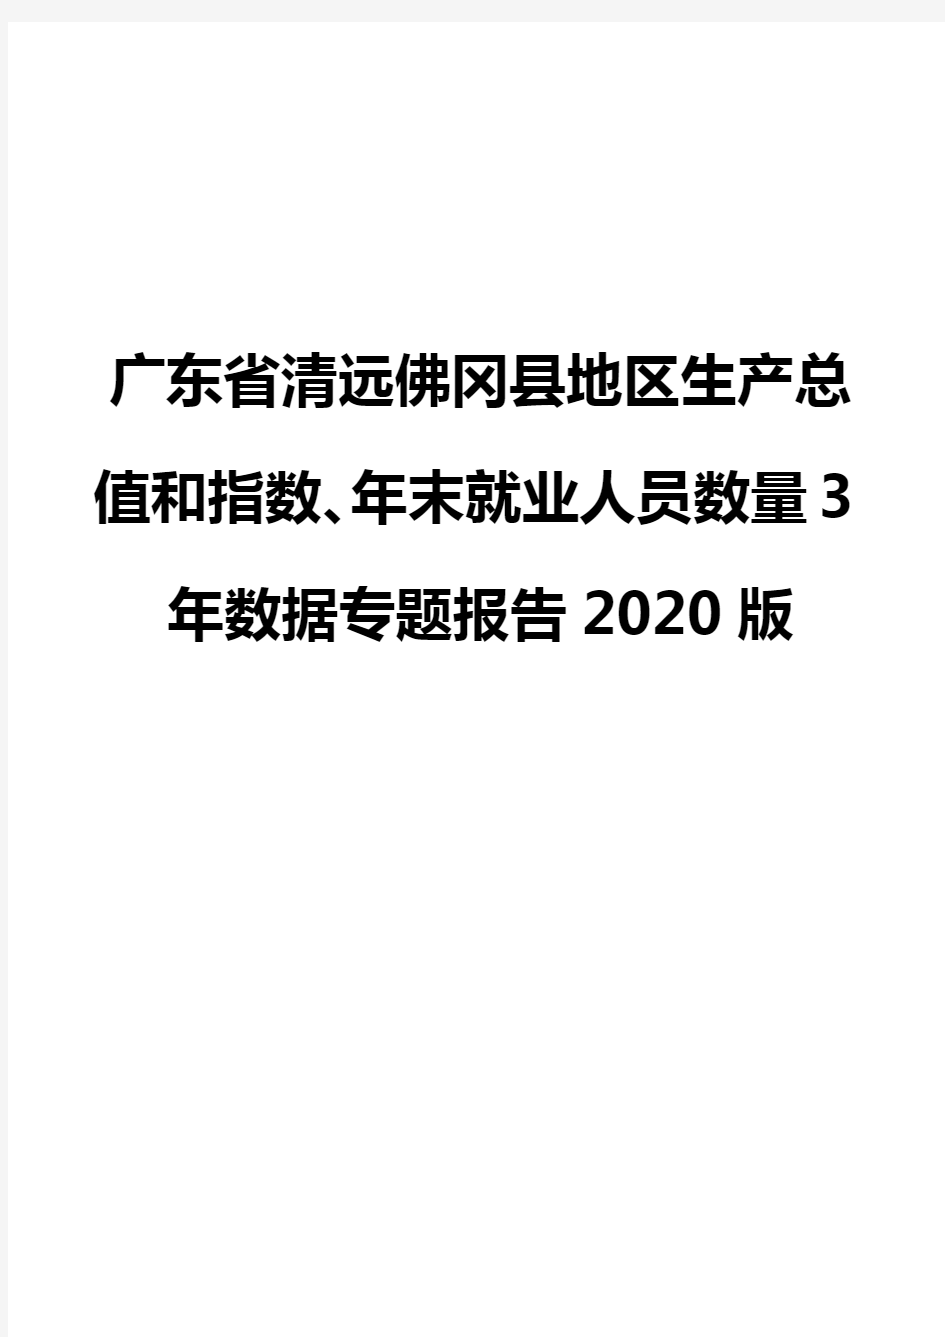 广东省清远佛冈县地区生产总值和指数、年末就业人员数量3年数据专题报告2020版